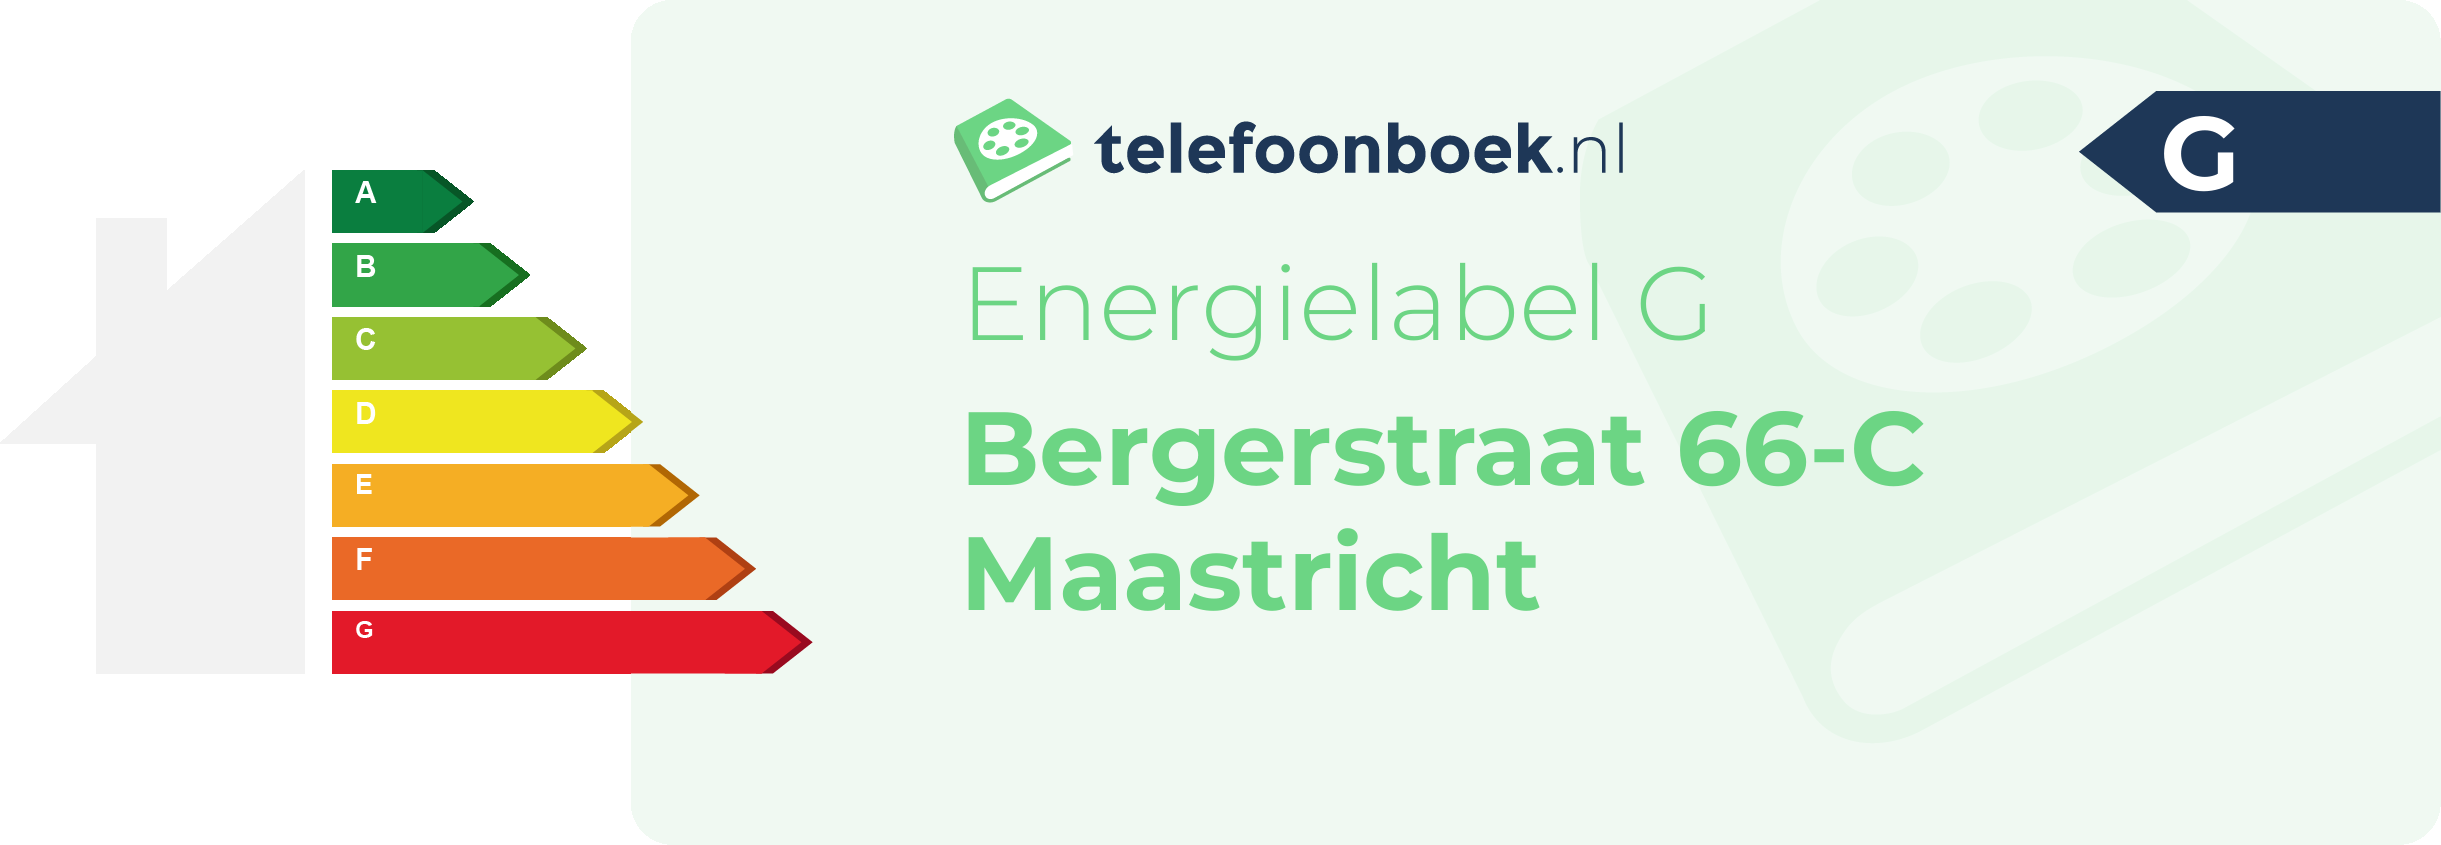 Energielabel Bergerstraat 66-C Maastricht